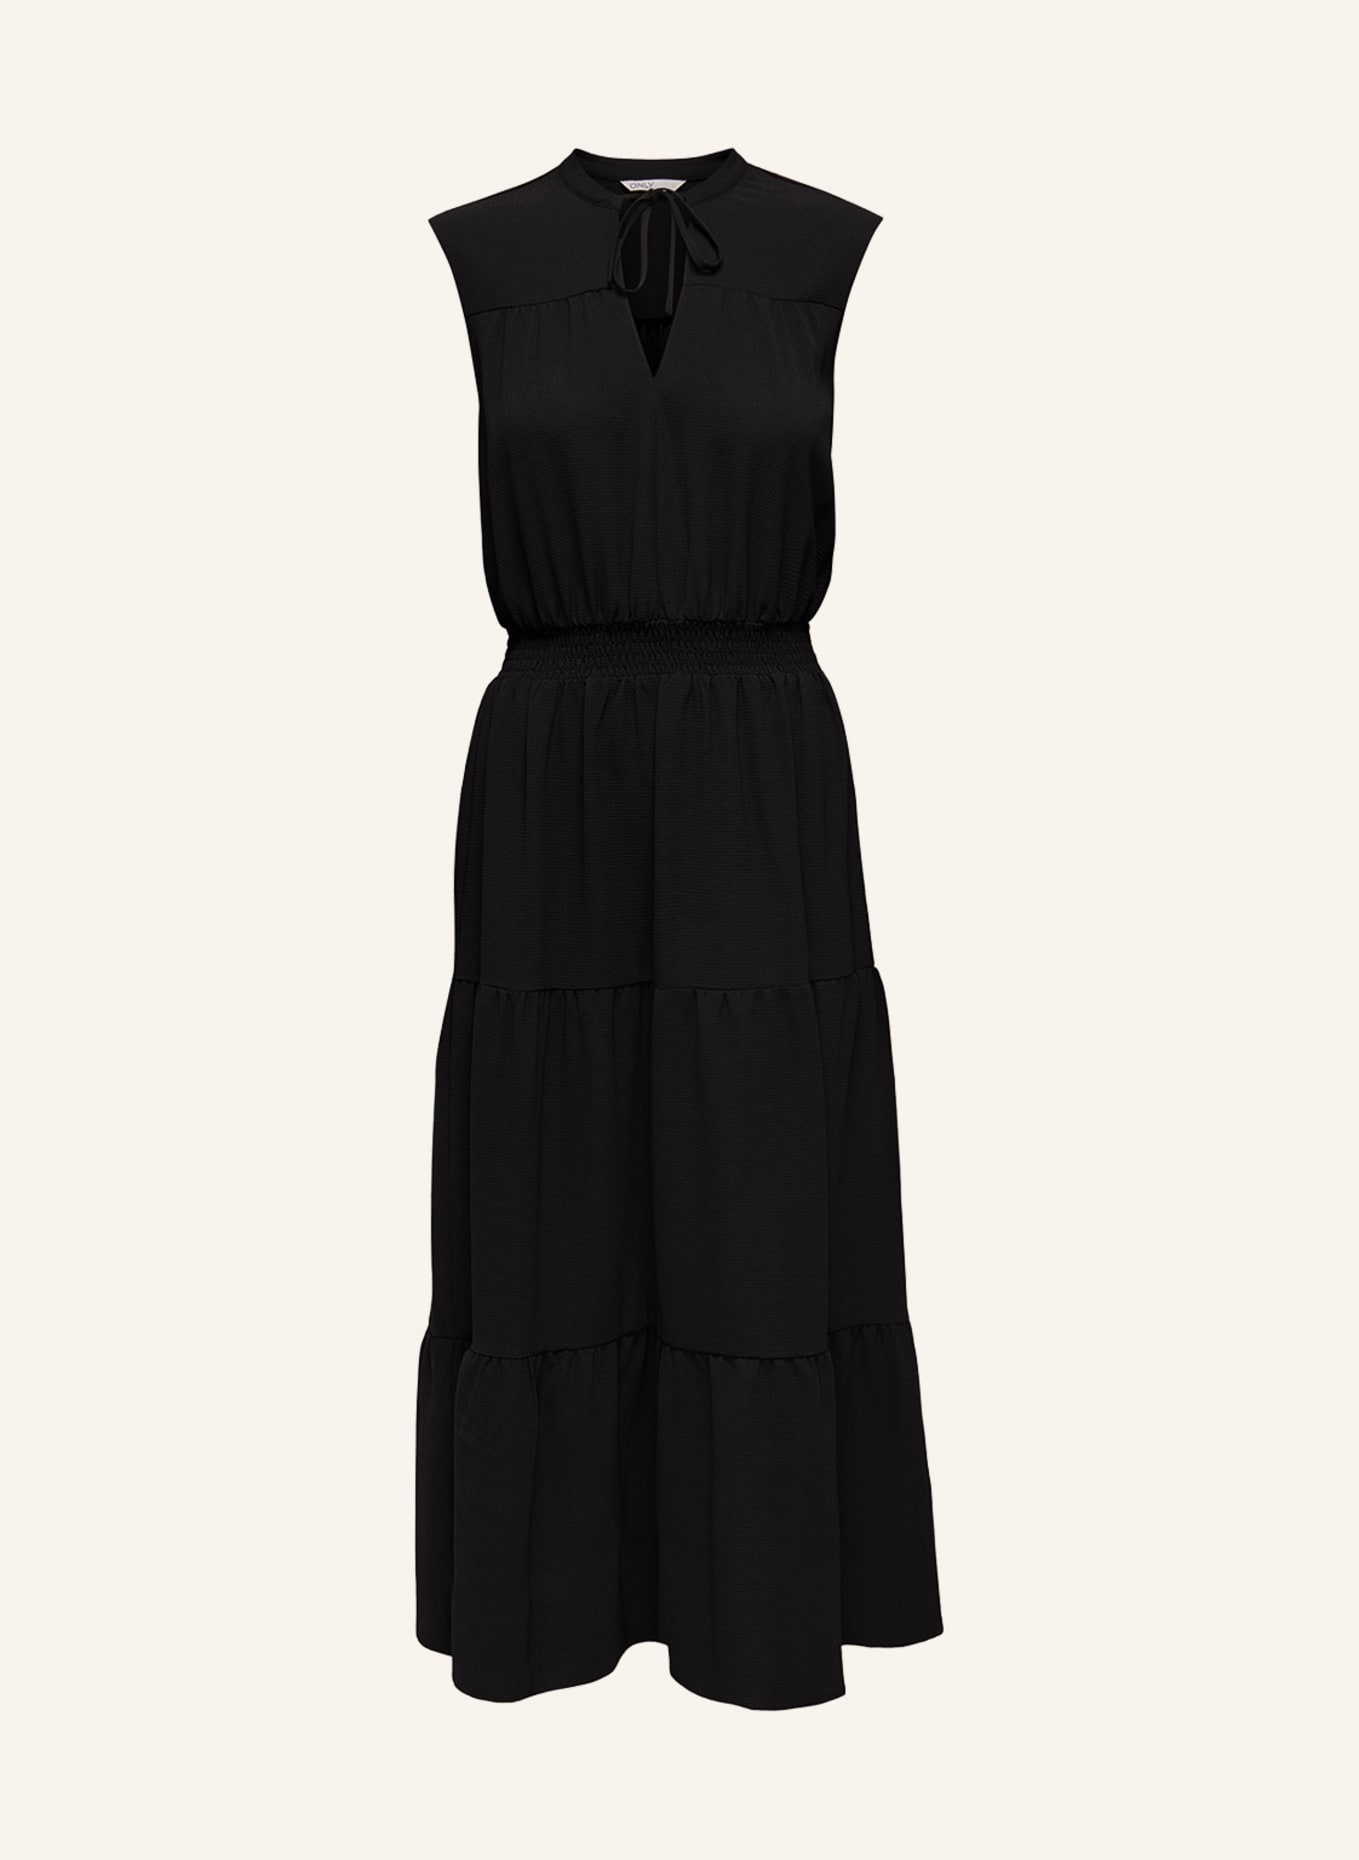 ONLY Dress, Color: BLACK (Image 1)